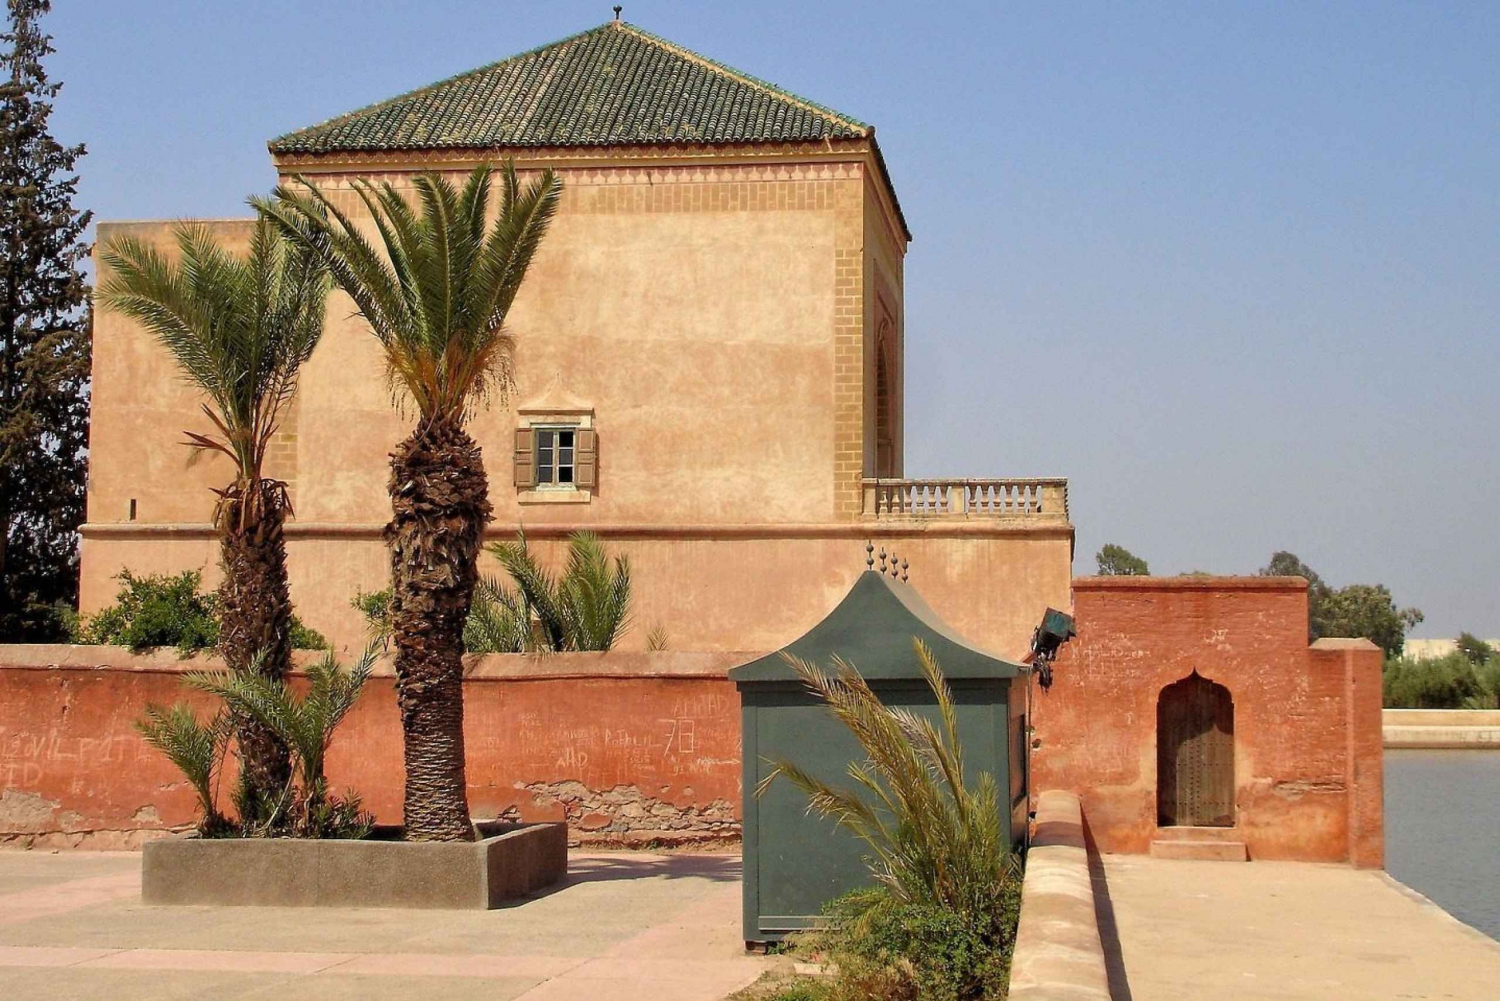 Marrakech: Menara, Secret Gardens Tour with Camel Ride